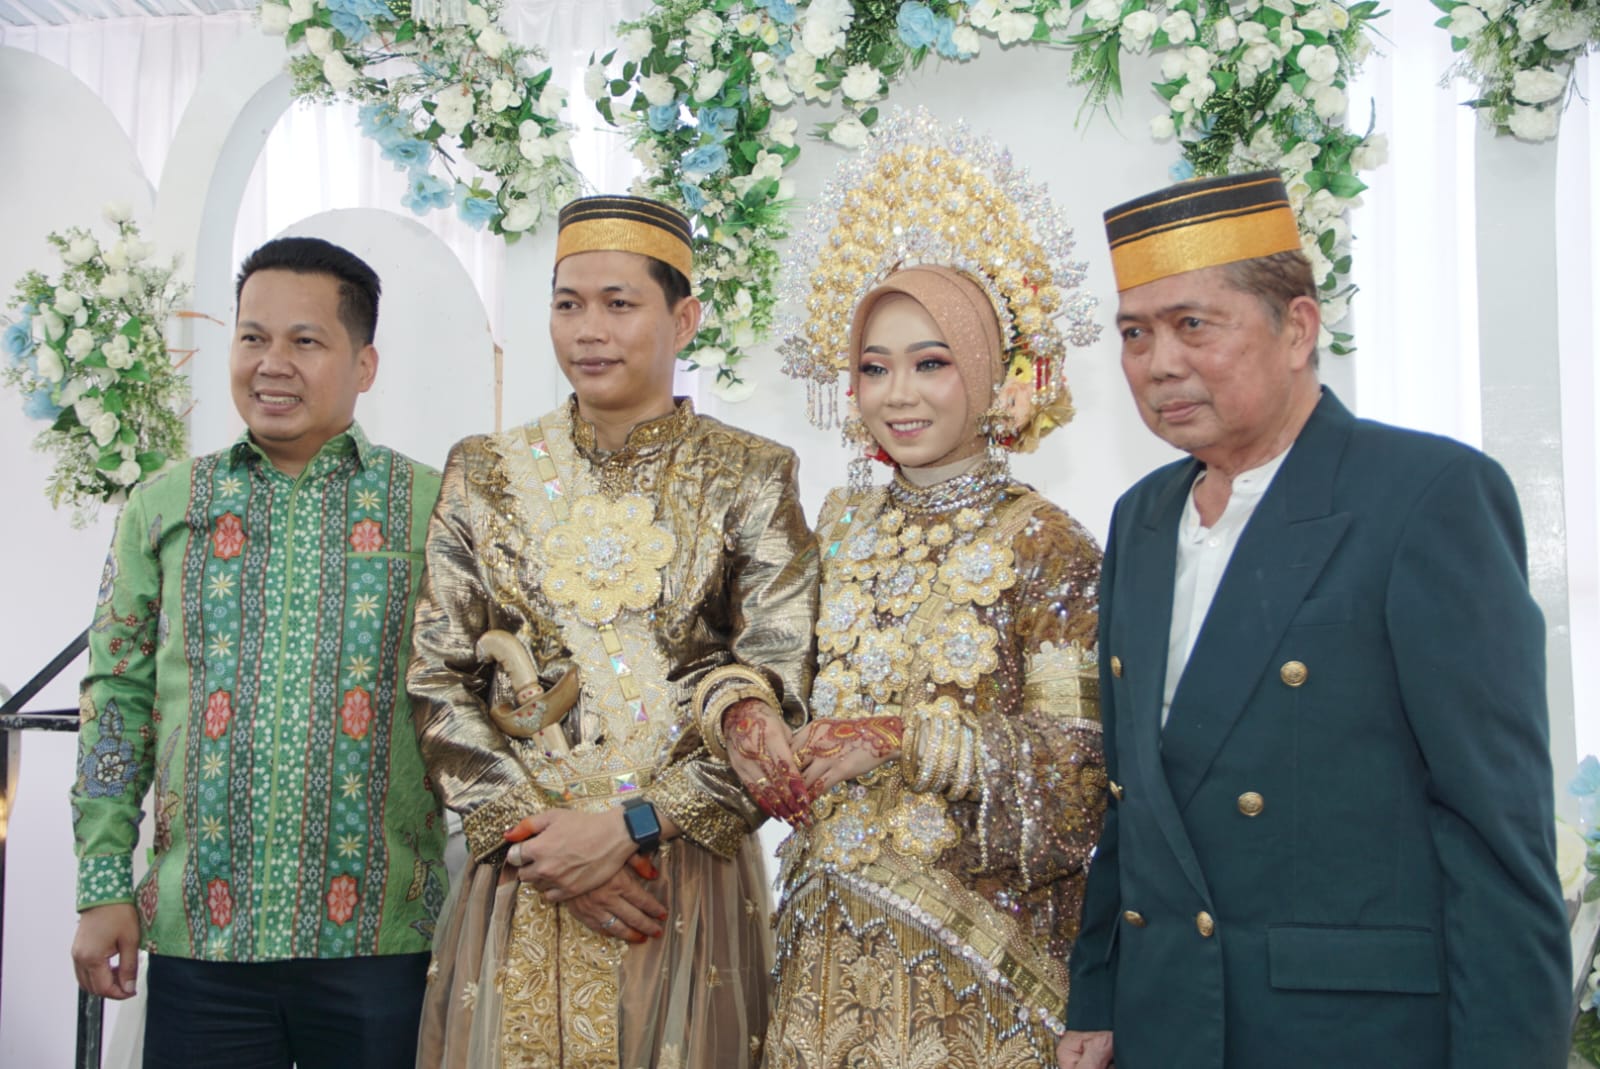 Panglima Laskar Banua Borneo H. Risdianto Haleng Menguatkan Hubungan dengan Masyarakat melalui Kehadiran dalam Acara Pernikahan